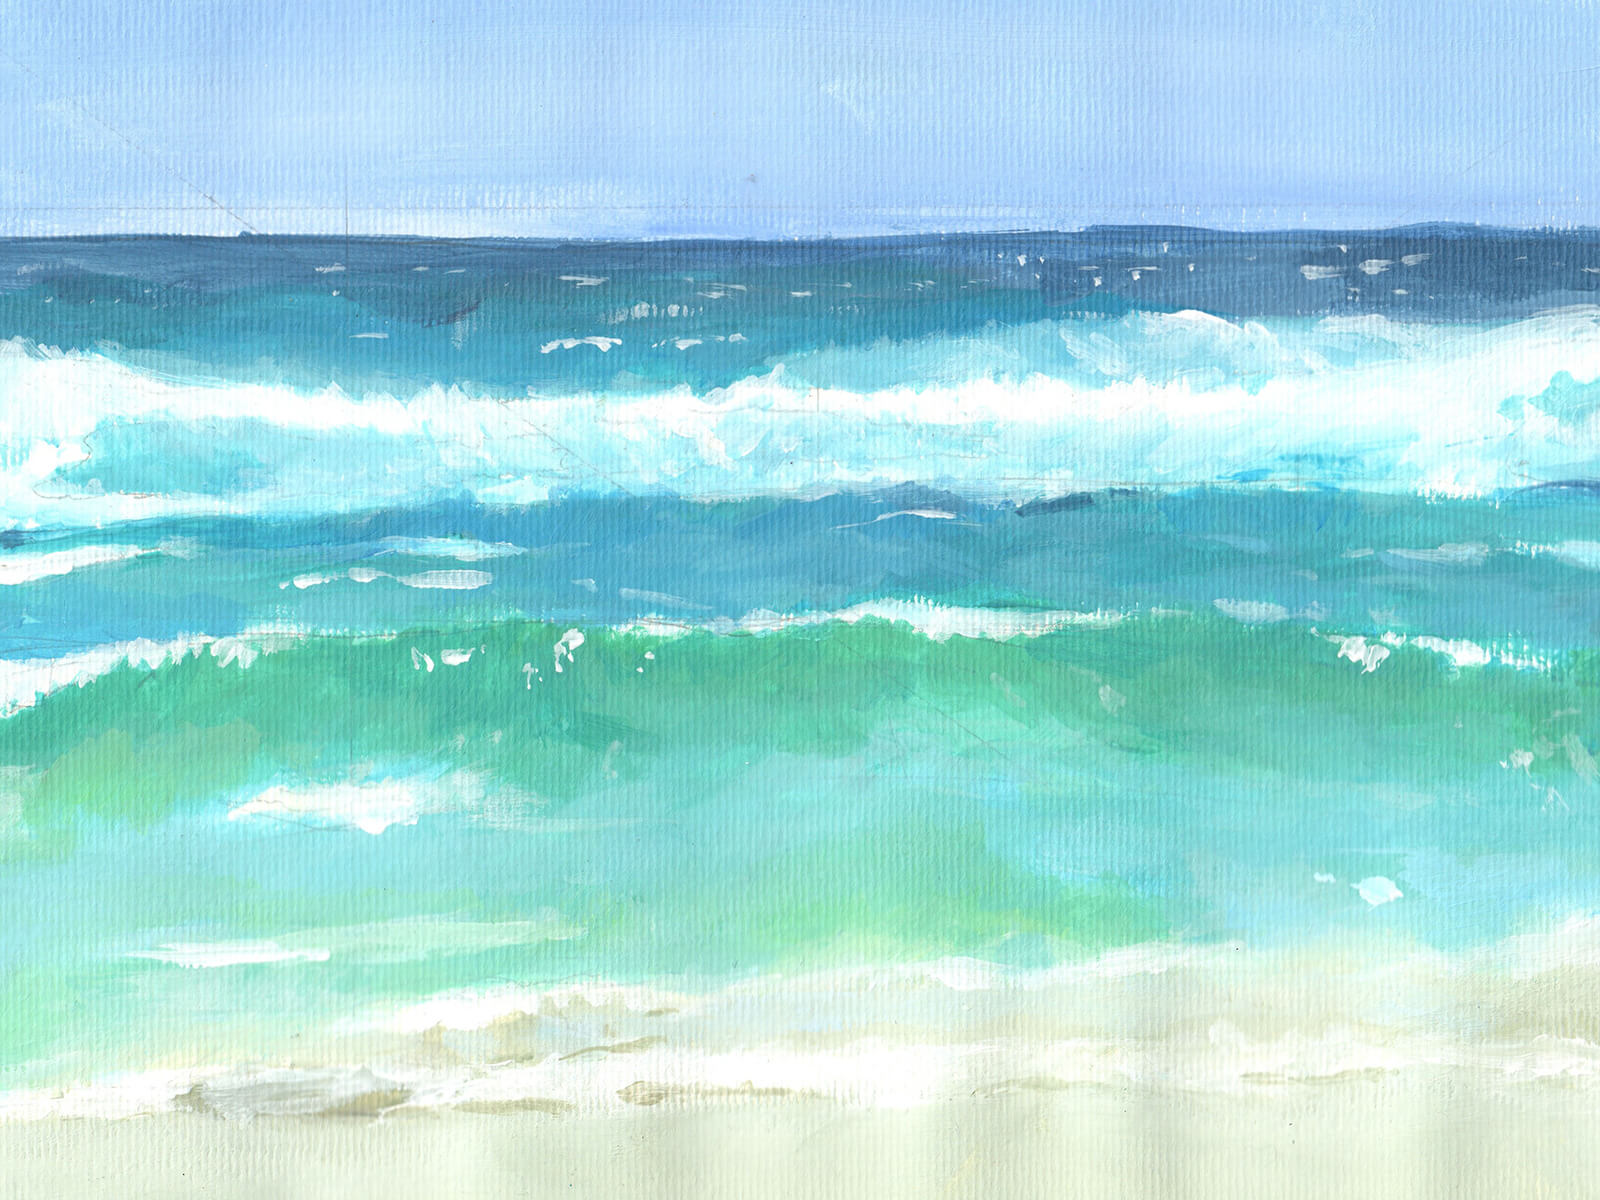 Pintura de paisaje de olas en una playa de arena que se elevan hacia el espectador. Los tonos en azul se oscurecen cuanto más se mira la pintura.